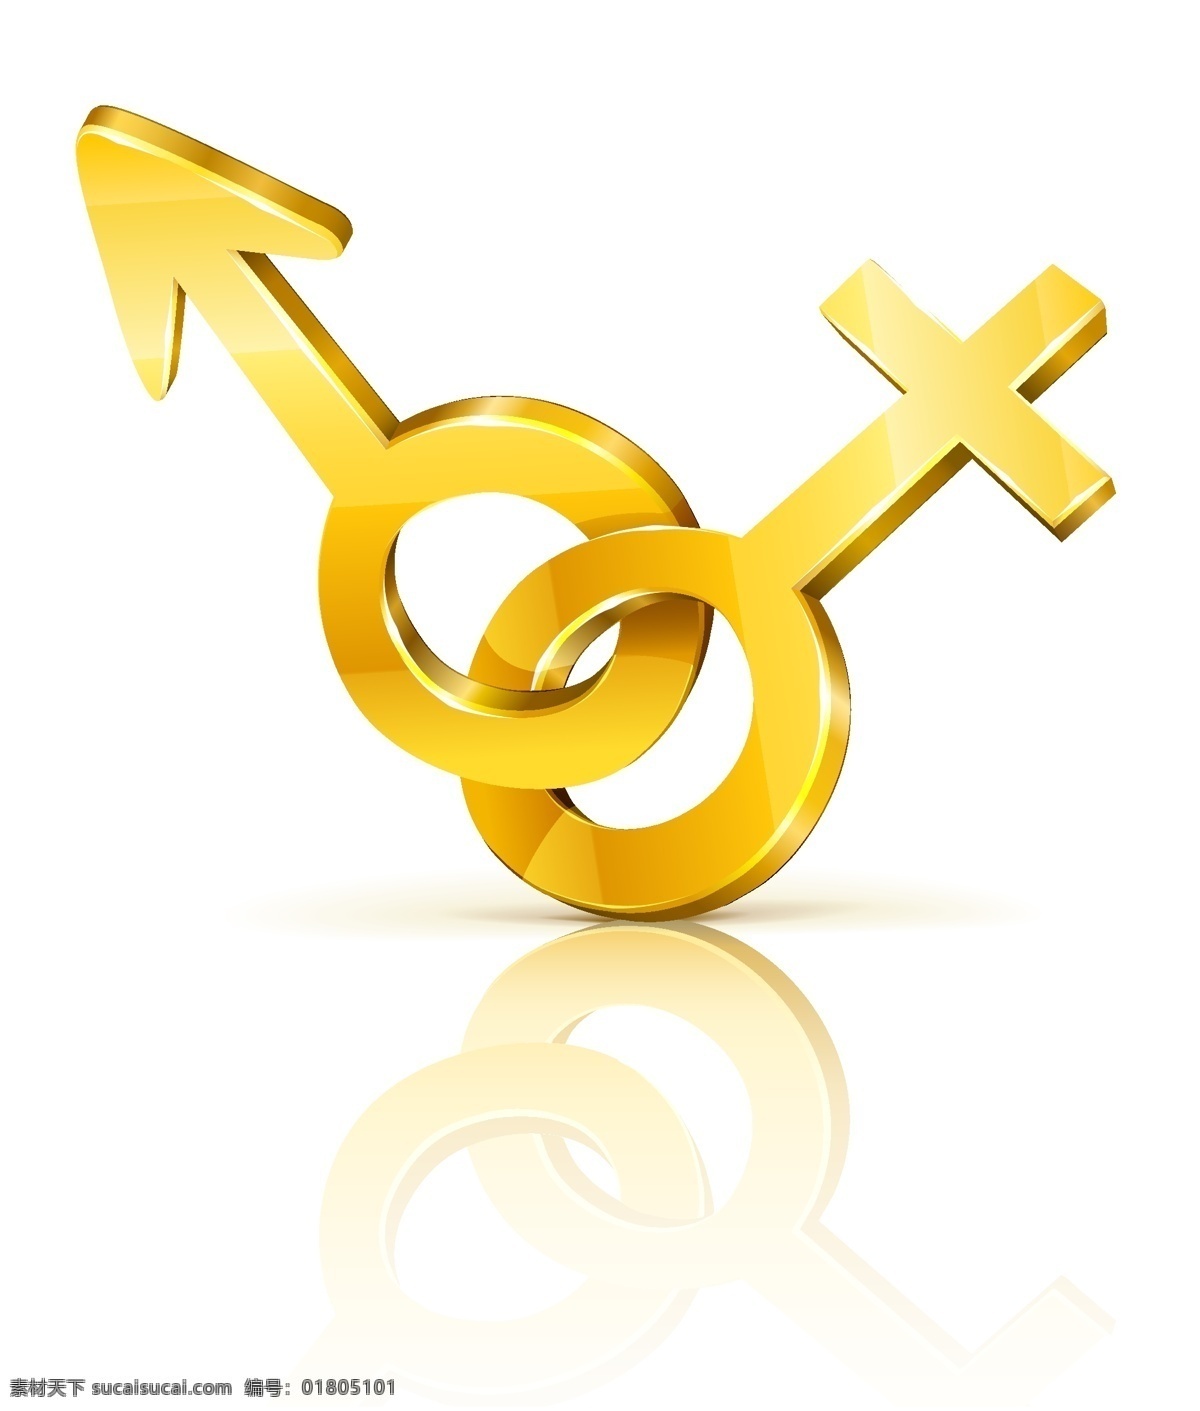 三维 男性 女性 金钥匙 符号 矢量 黄金 男 男性女性 钥匙 三维的男性 女性的黄金 钥匙符号 象征 自由 男女 人物 矢量图 其他矢量图